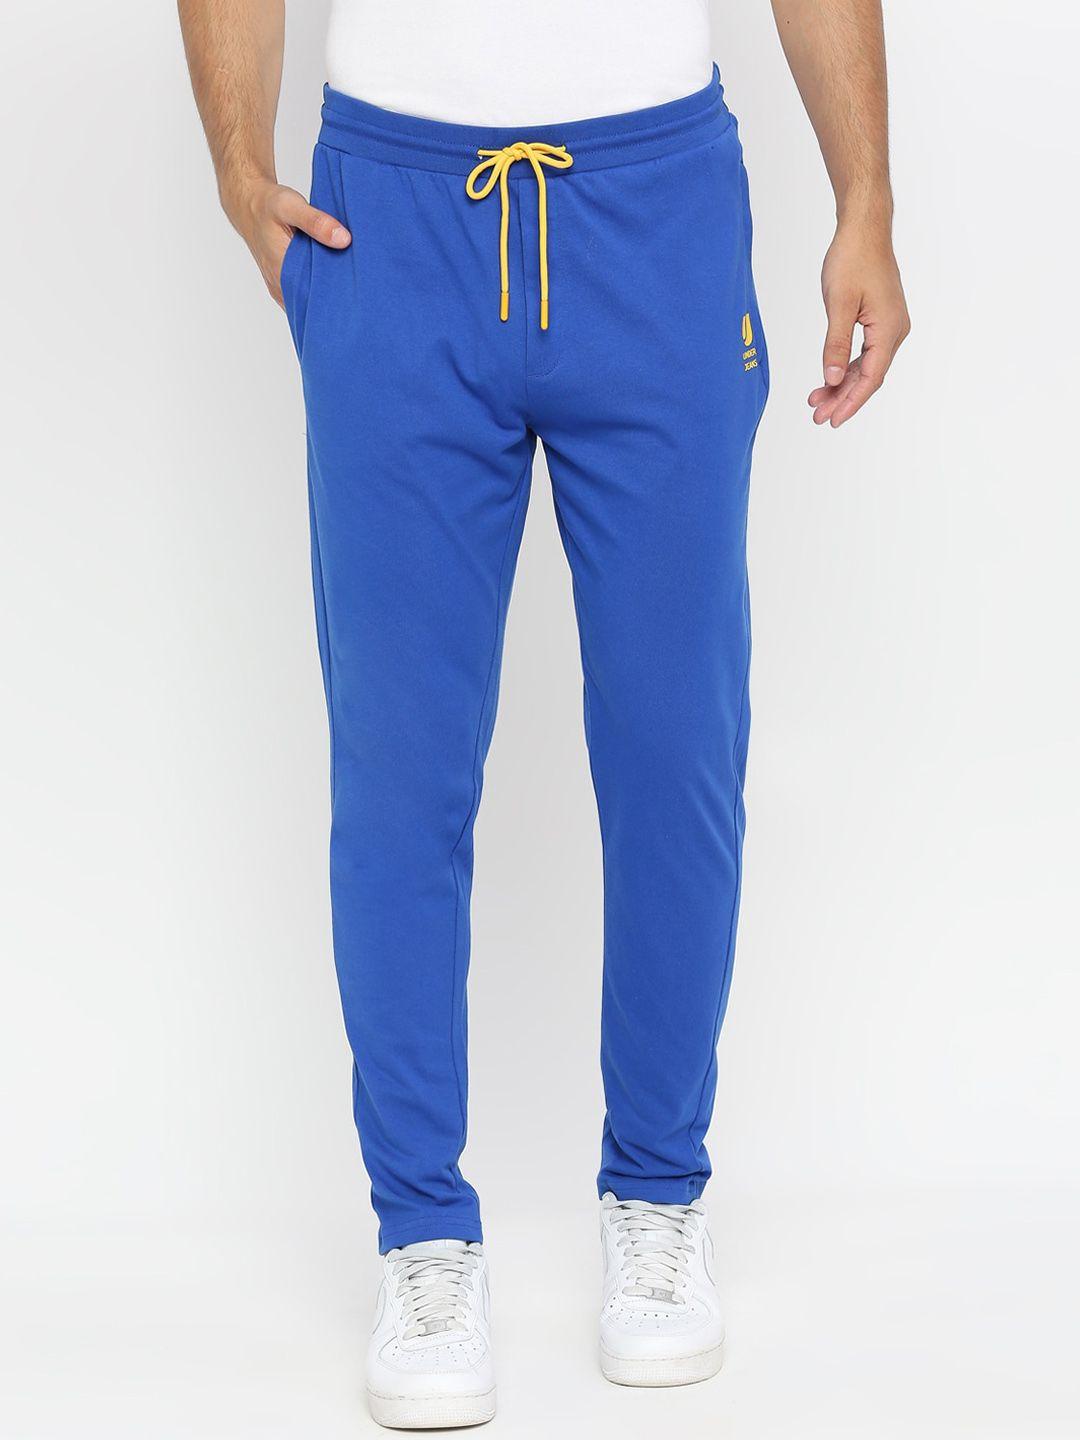 underjeans by spykar men blue solid cotton track pants